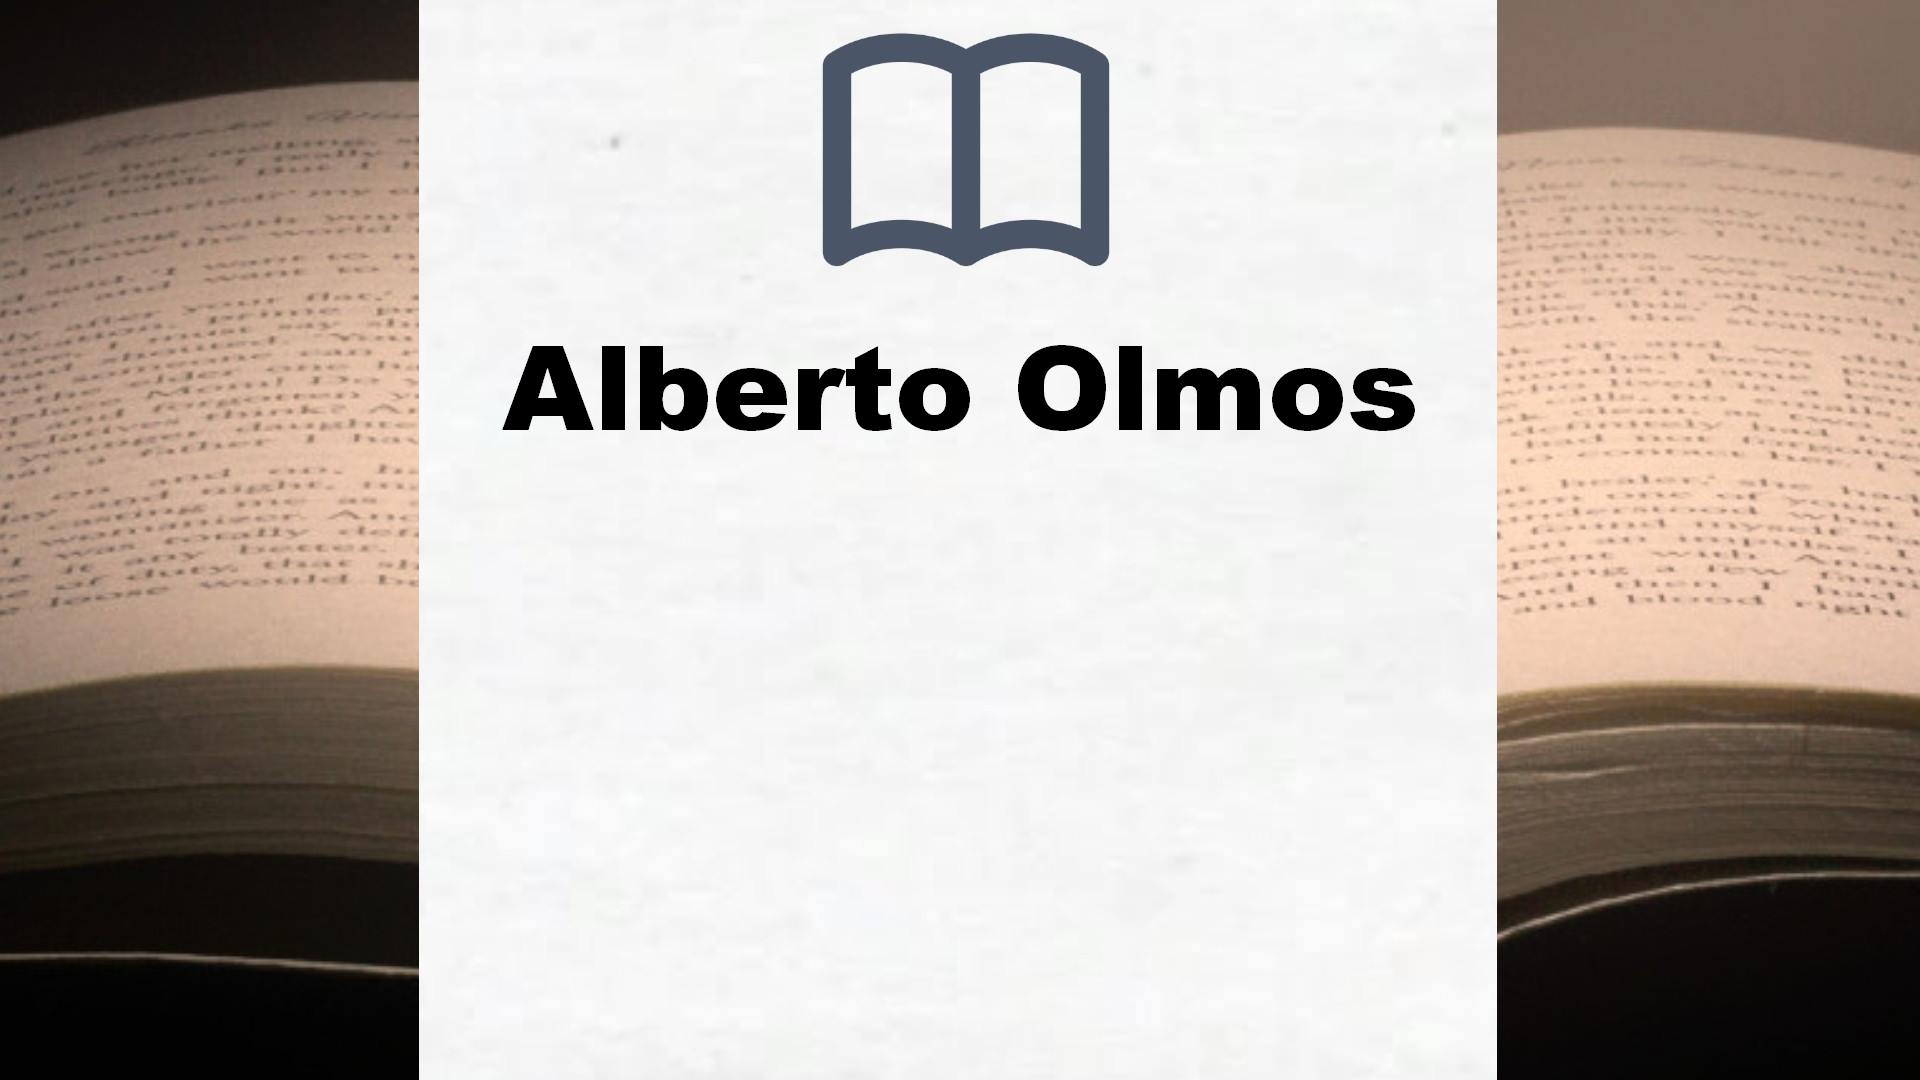 Libros Alberto Olmos